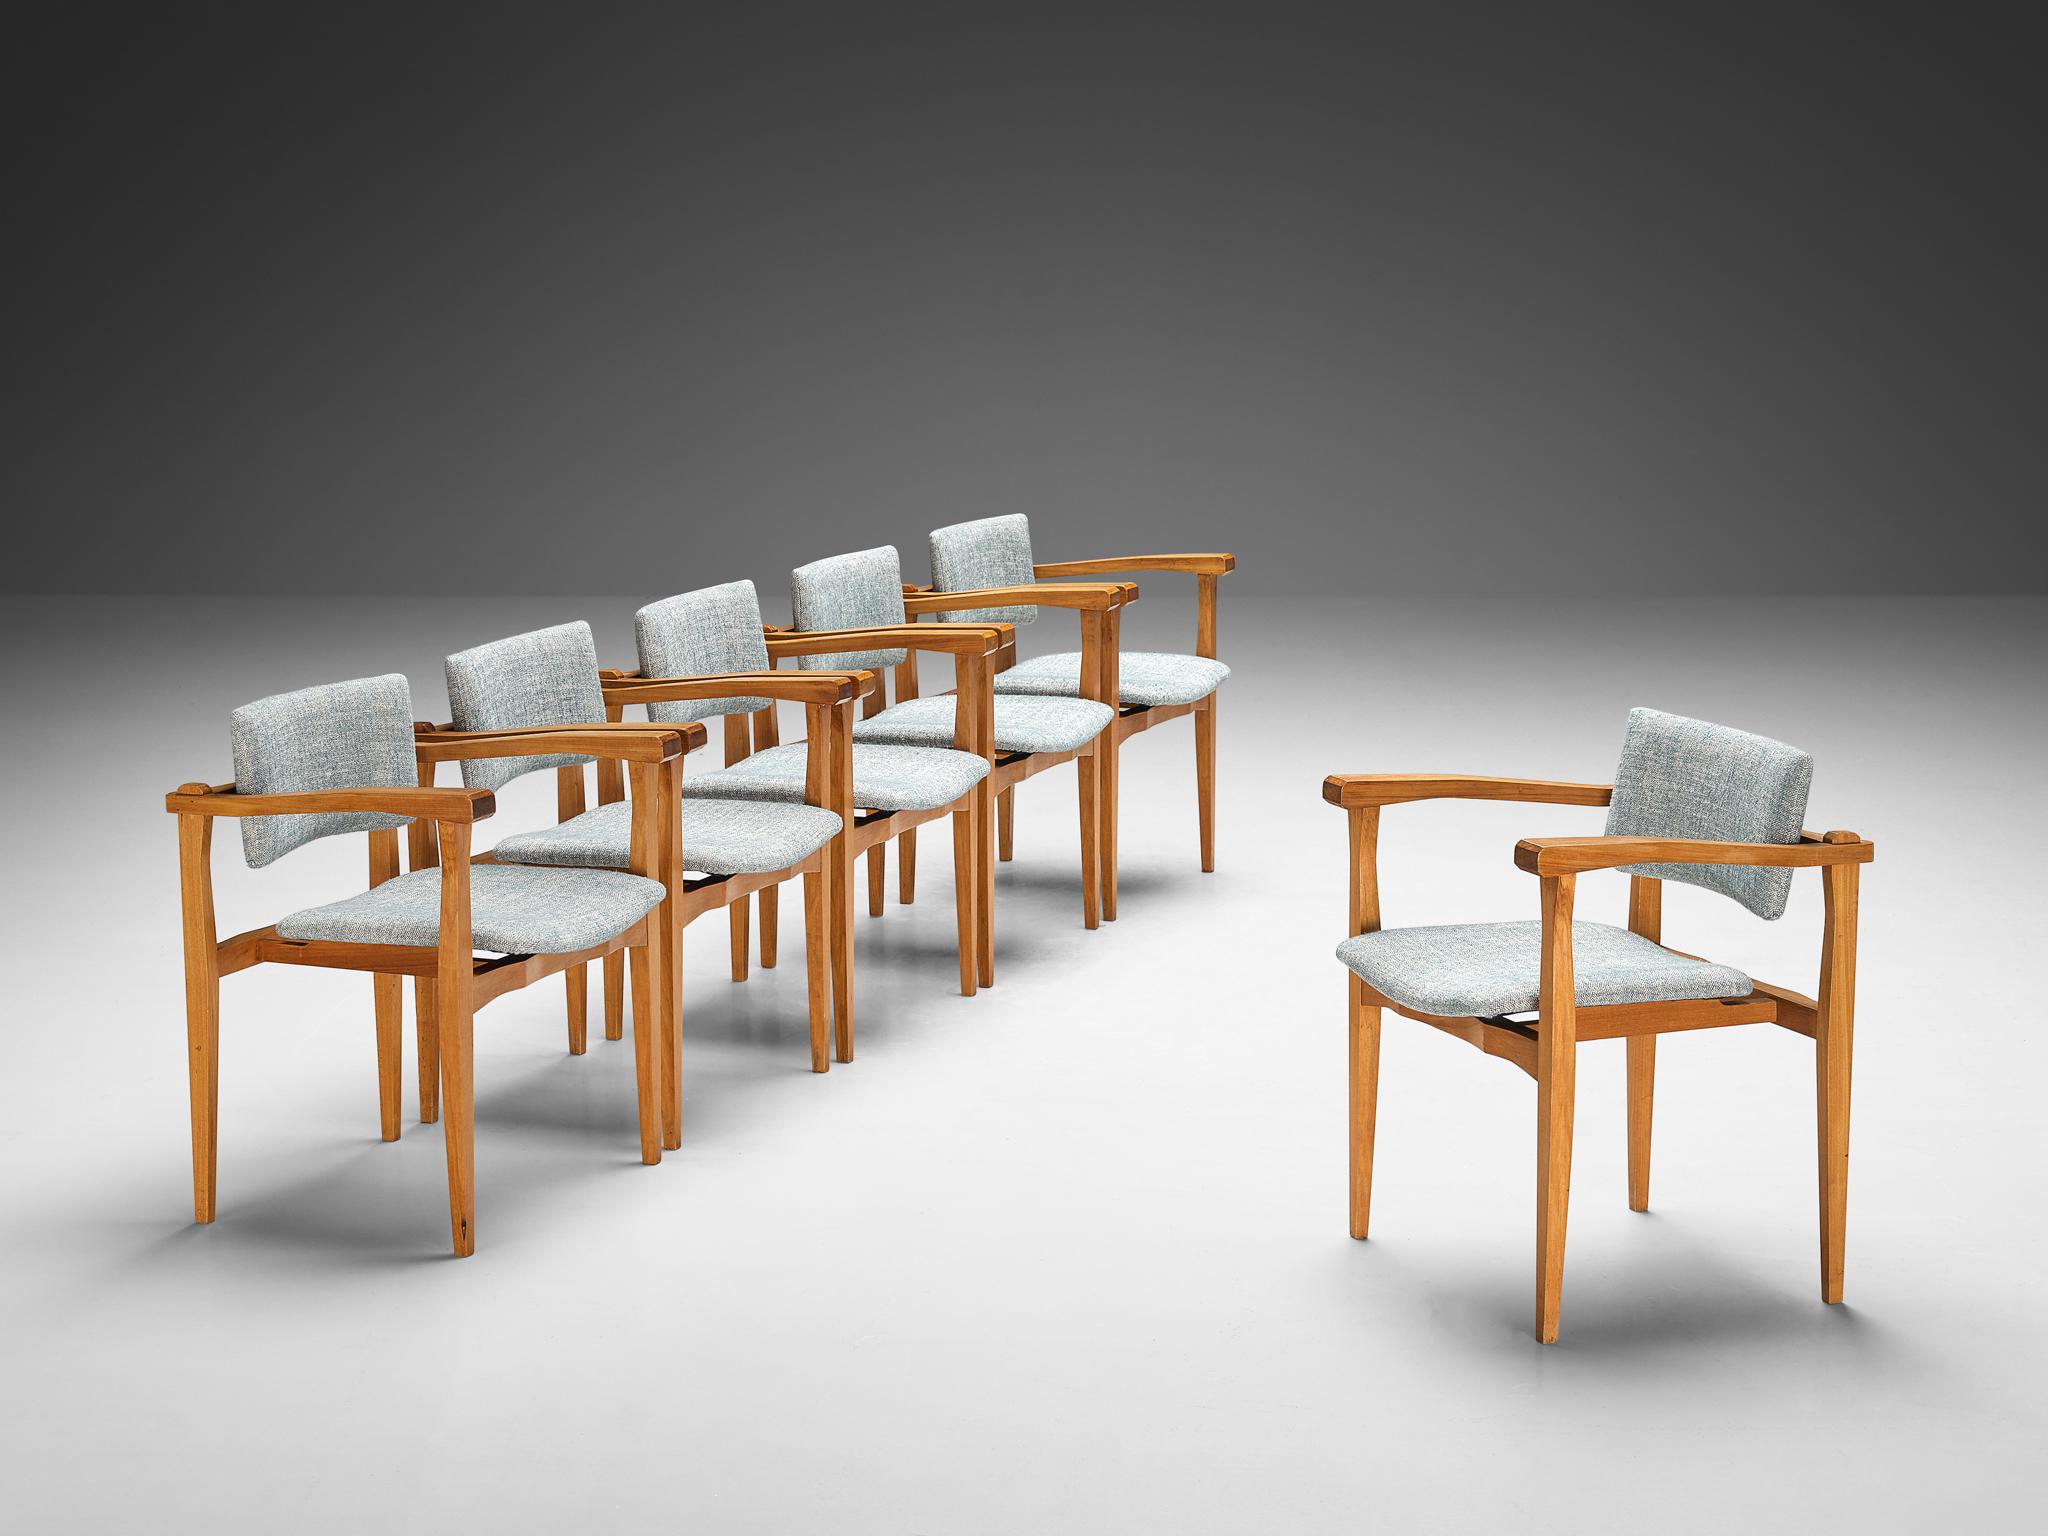 Satz von sechs Sesseln, Nussbaum, Stoff von Pierre Frey, Italien, 1960er Jahre.

Dieses Set aus sechs Sesseln, die in Italien hergestellt werden, ist bescheiden und schlicht in seinem Design. Die Stühle haben einen offenen und architektonischen